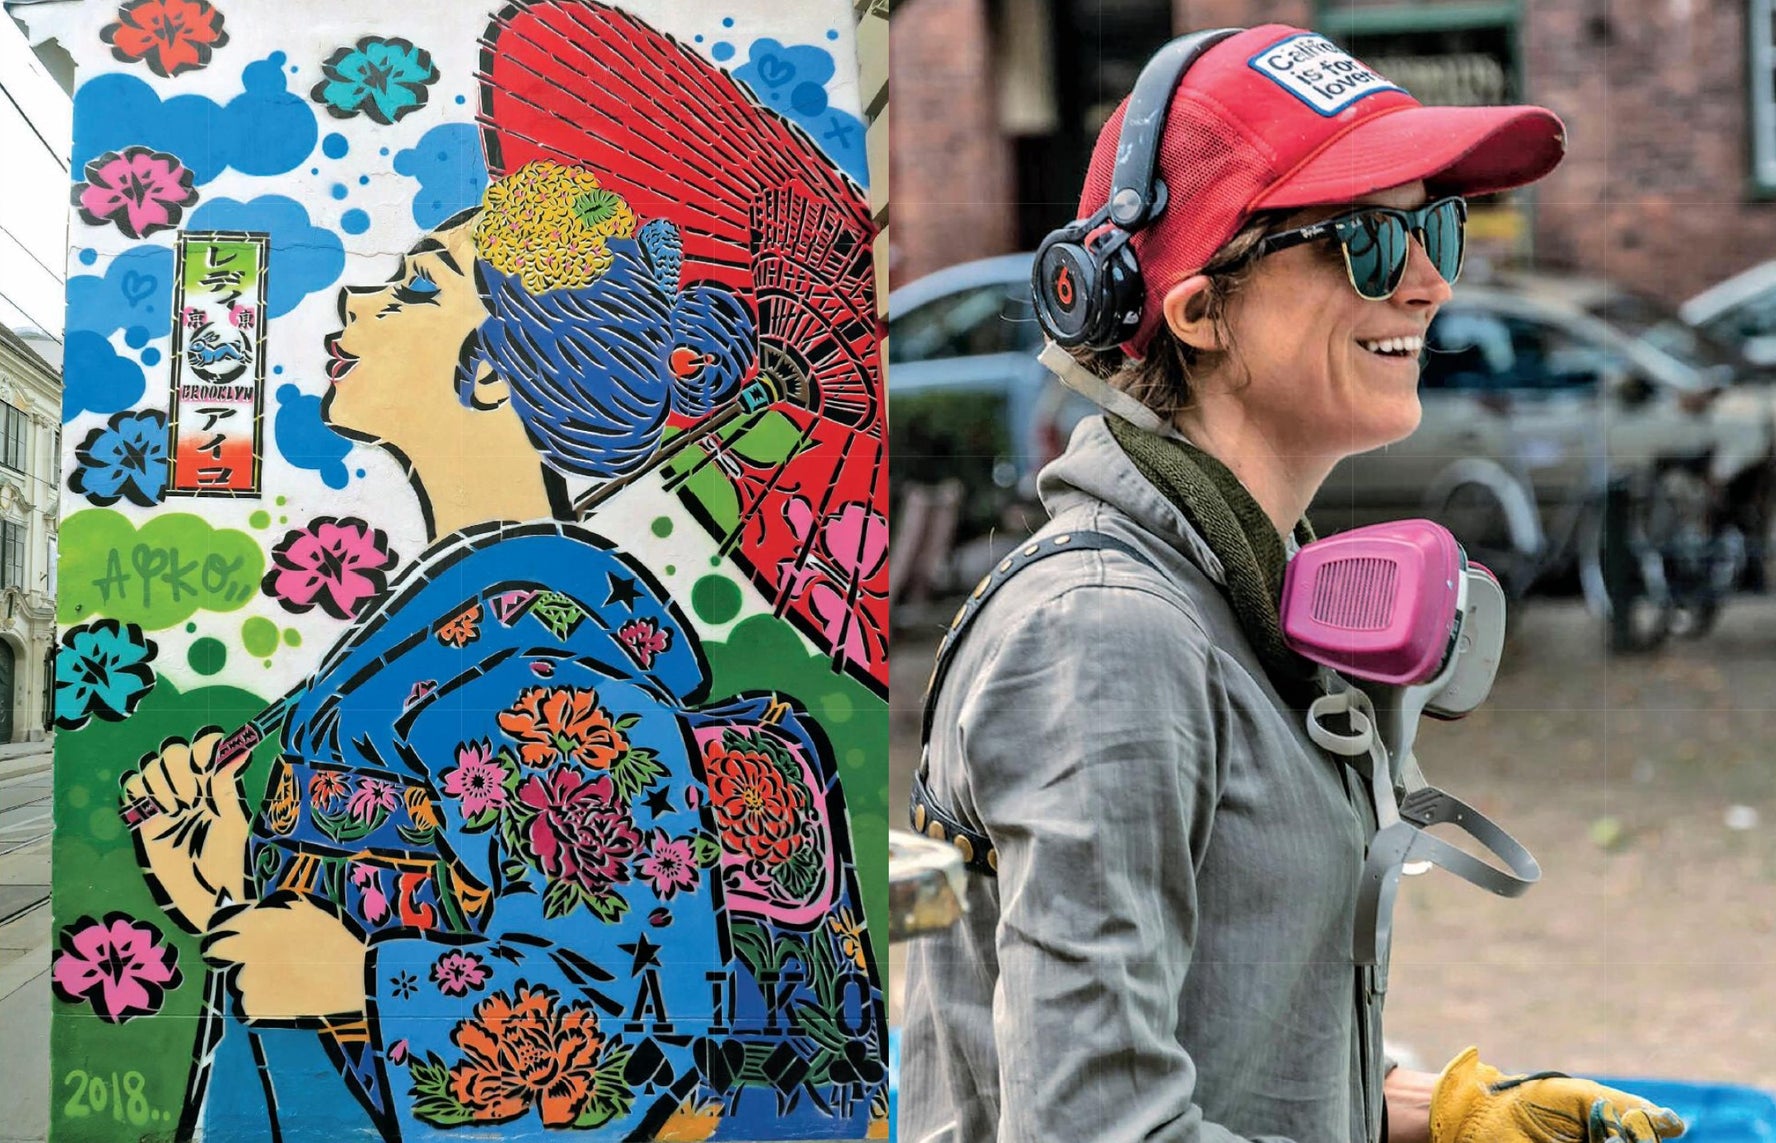 Artystki uliczne: 24 współczesnych artystek zajmujących się graffiti i muralami z całego świata